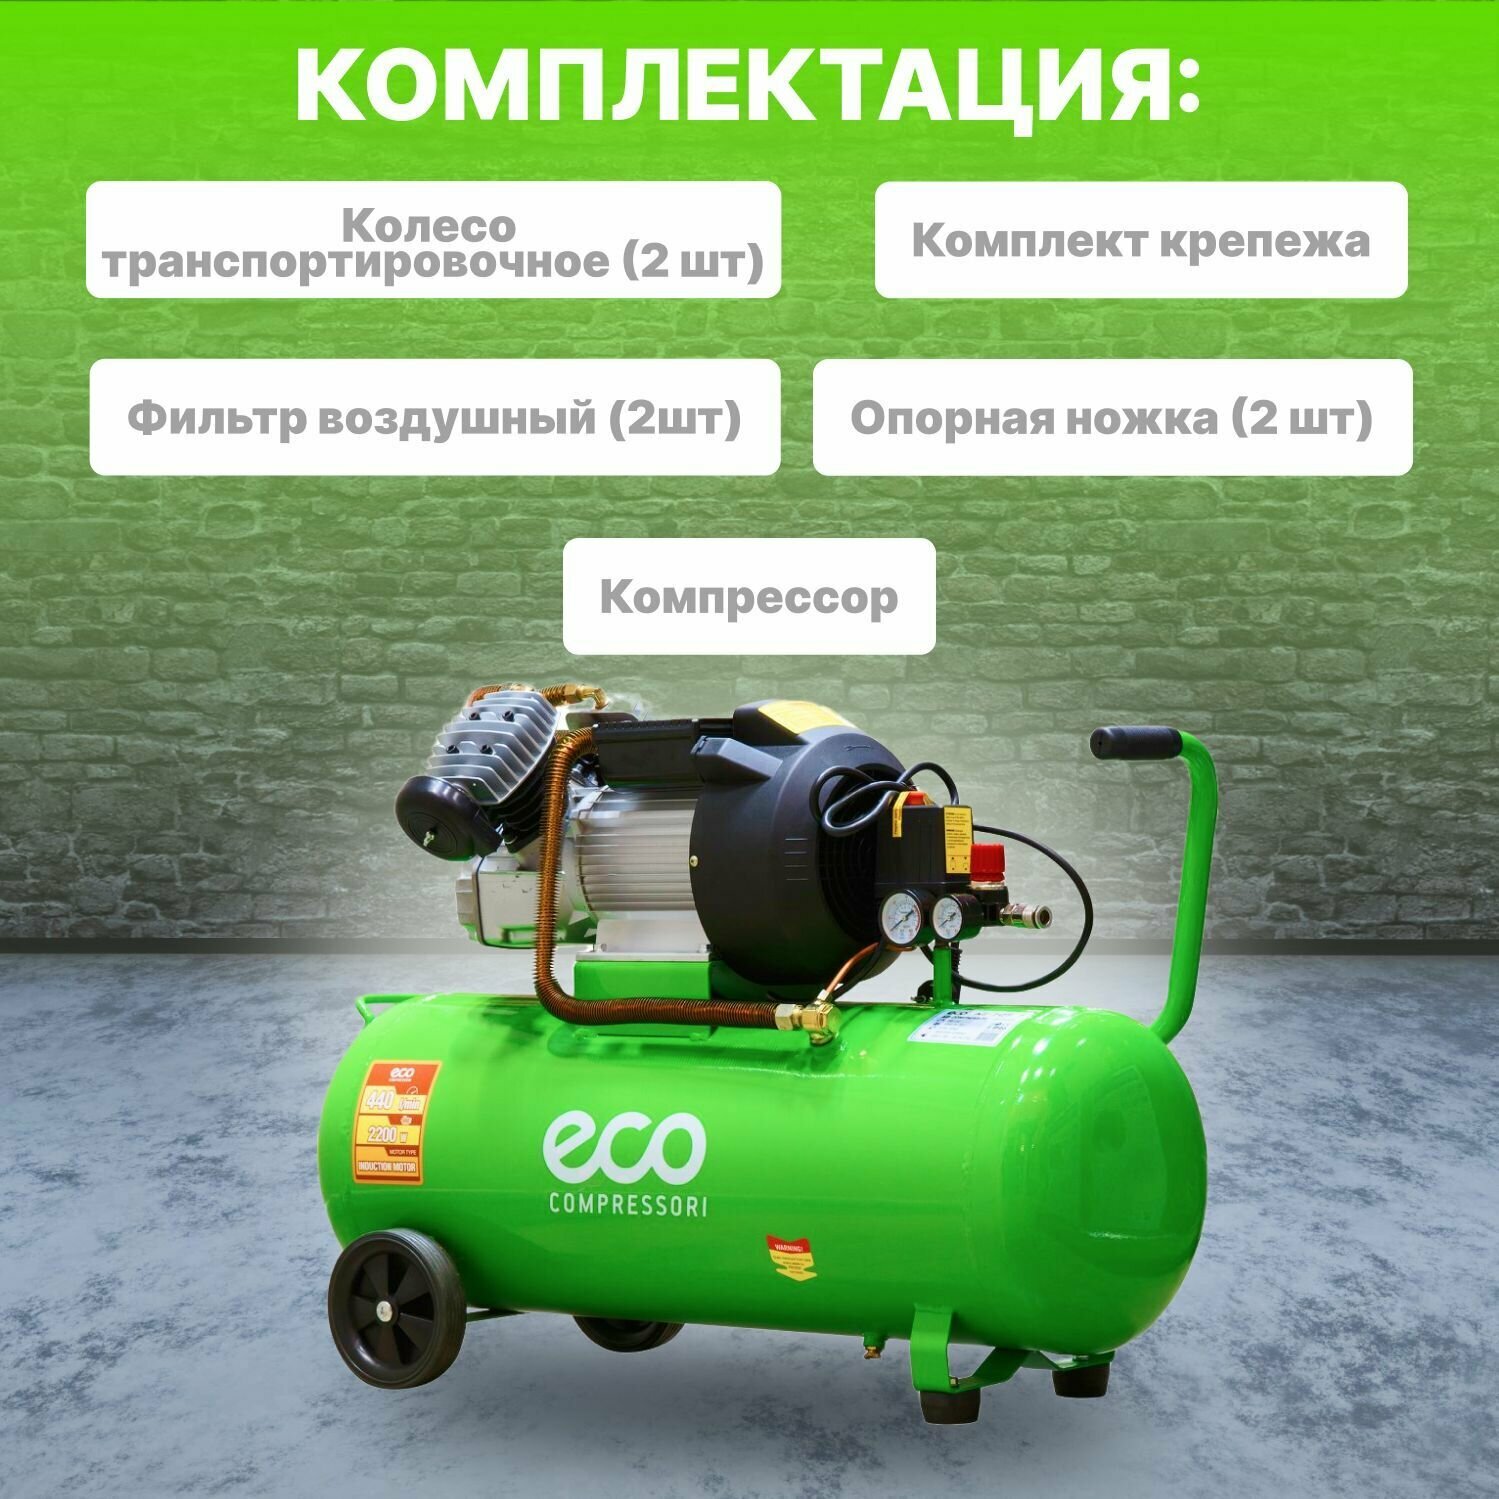 Воздушный компрессор Eco - фото №5